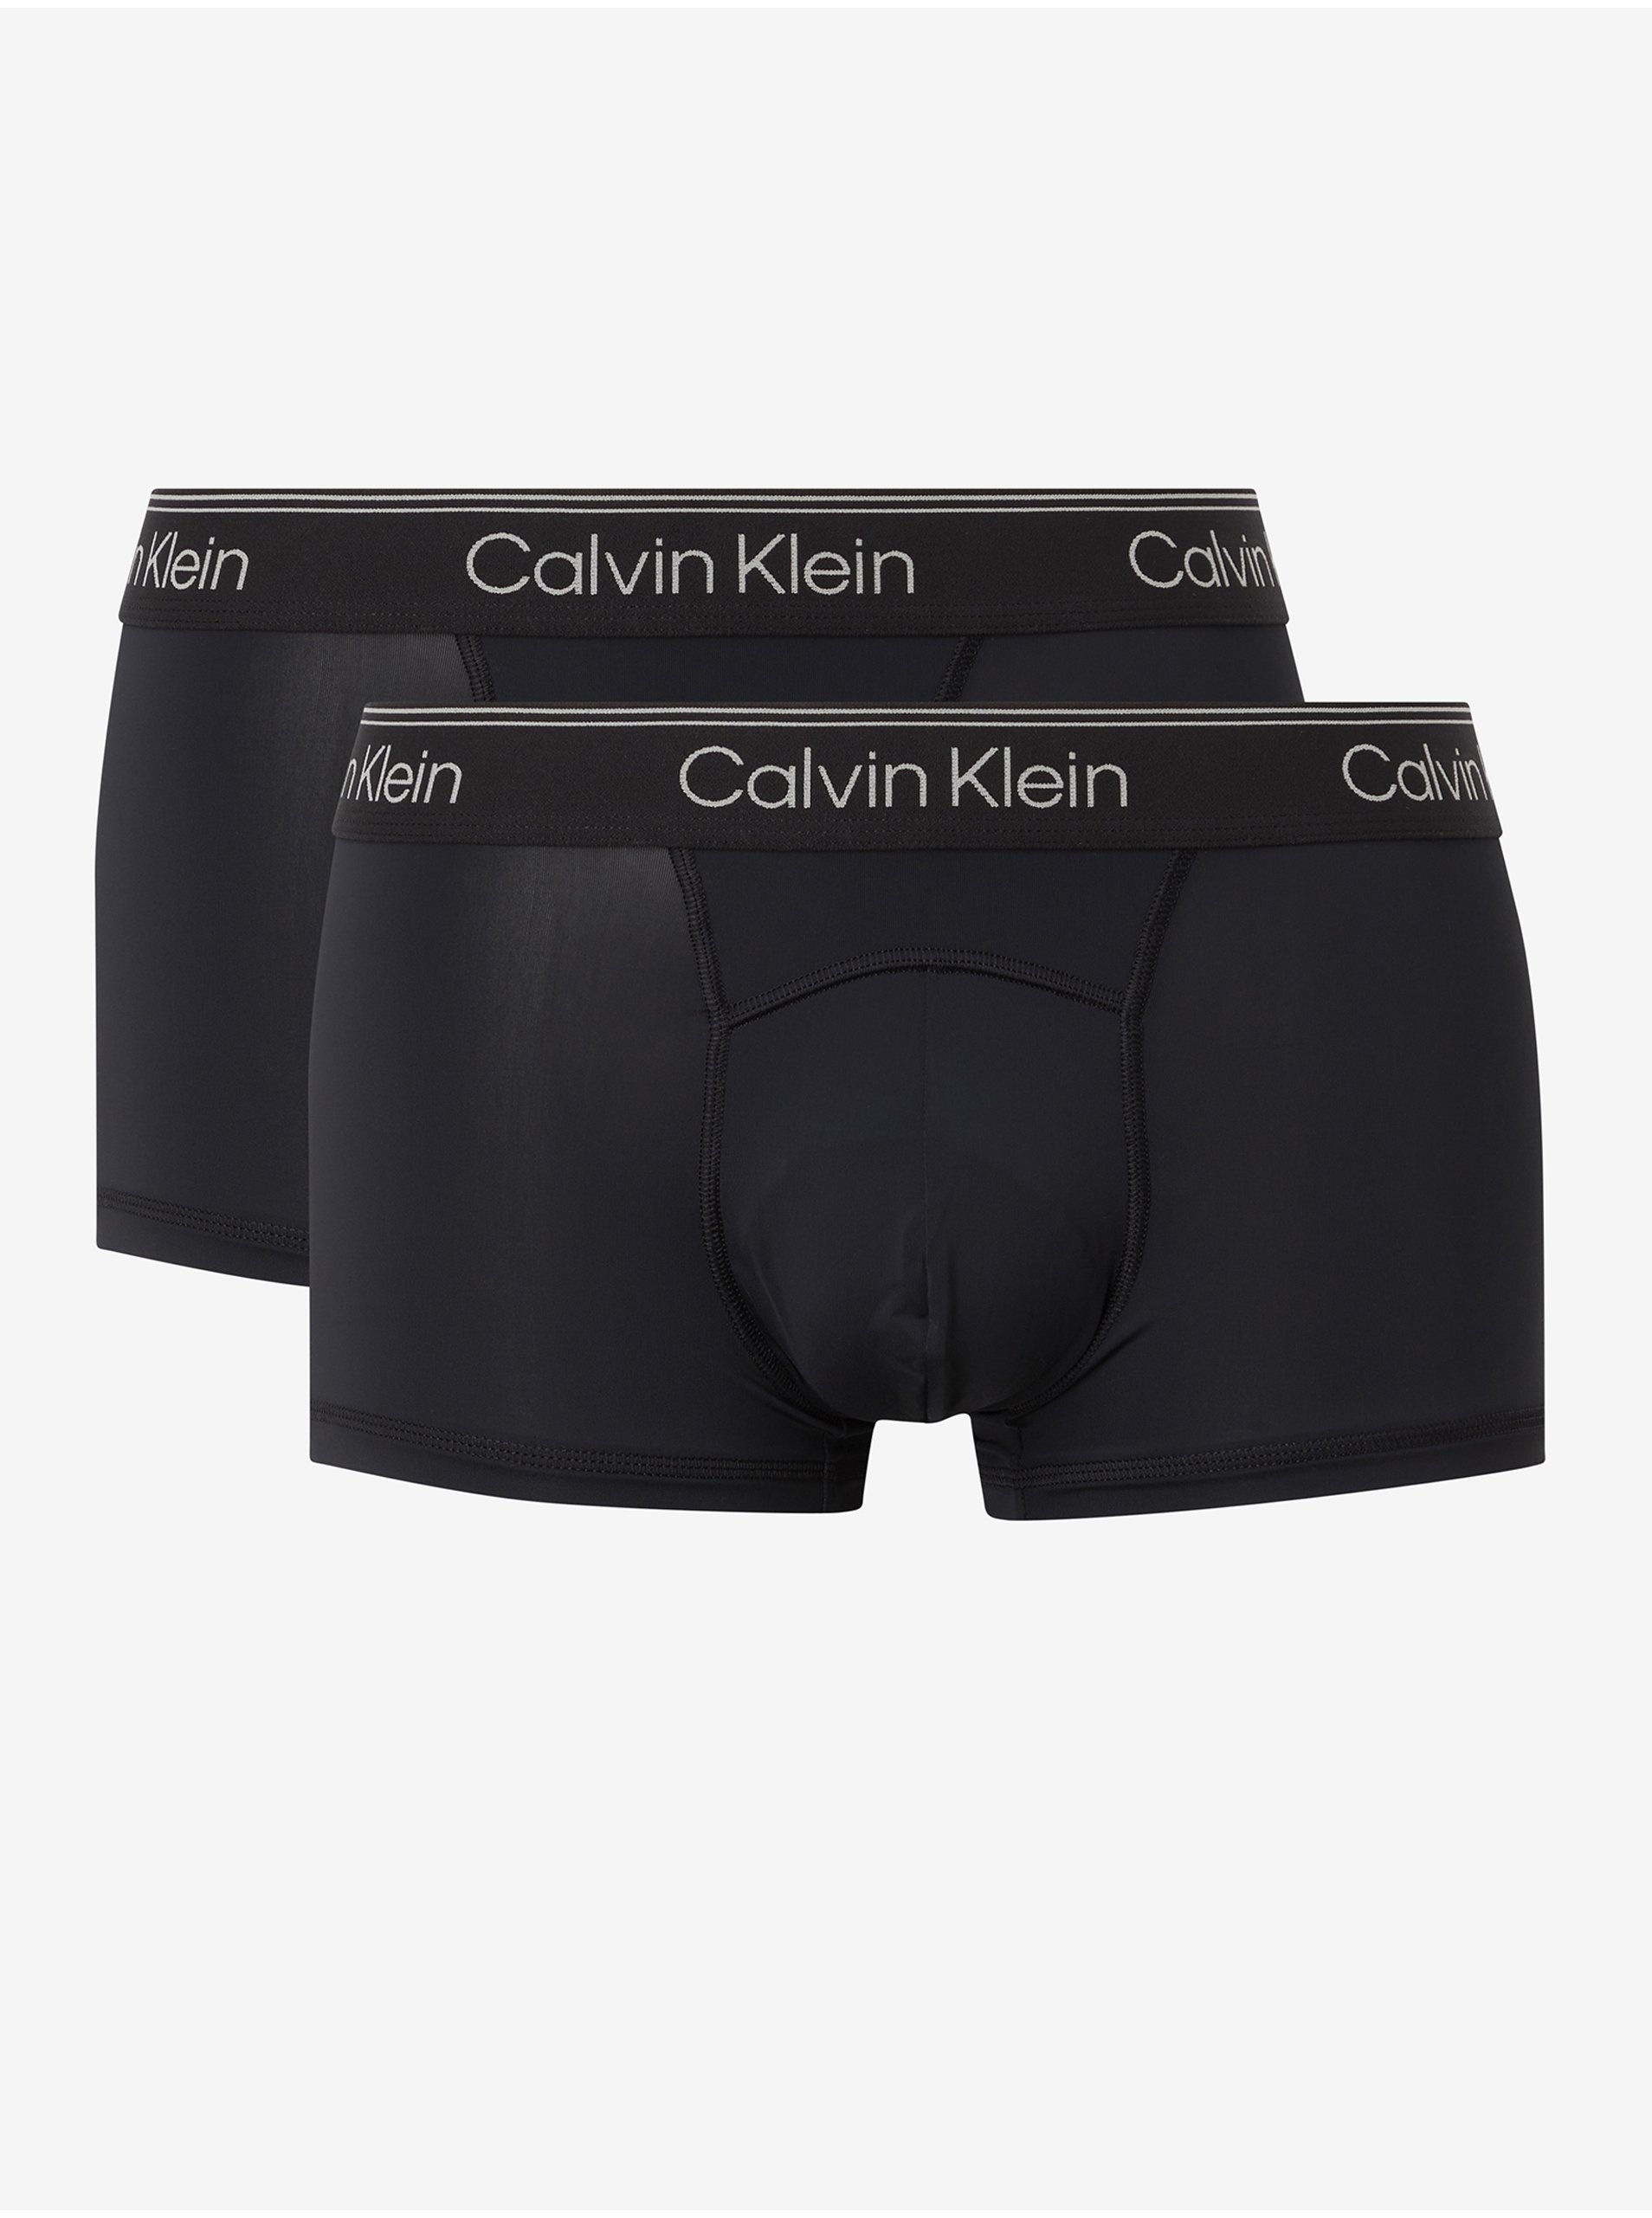 E-shop Sada dvoch čiernych boxerok v čiernej farbe s elastickým lemom 2PK Calvin Klein Underwear